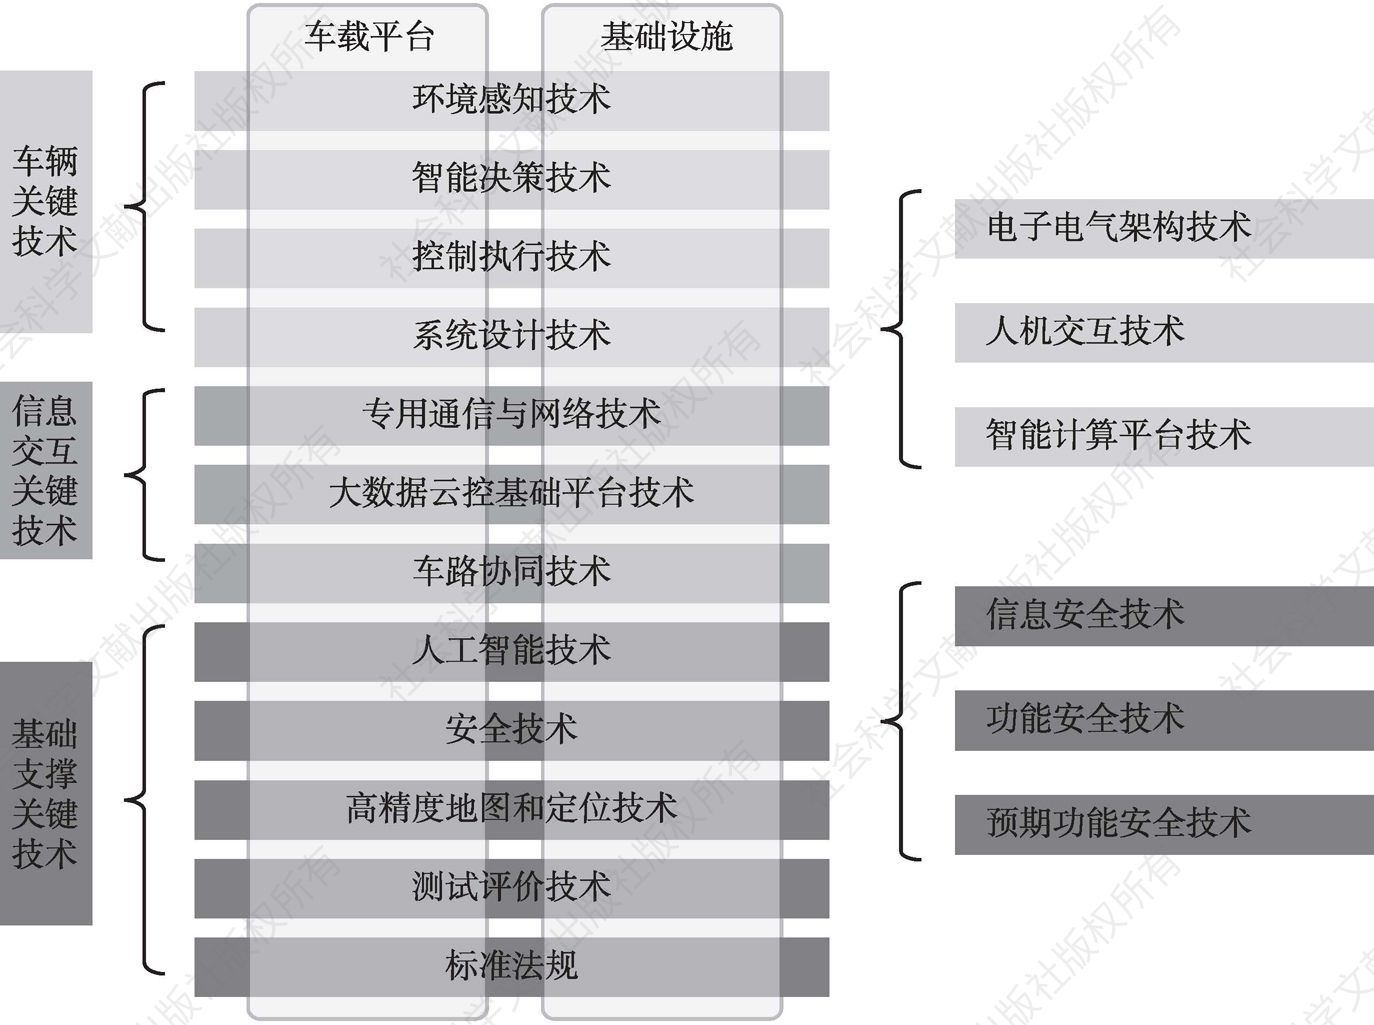 图3-5 智能网联汽车“三横两纵”技术架构